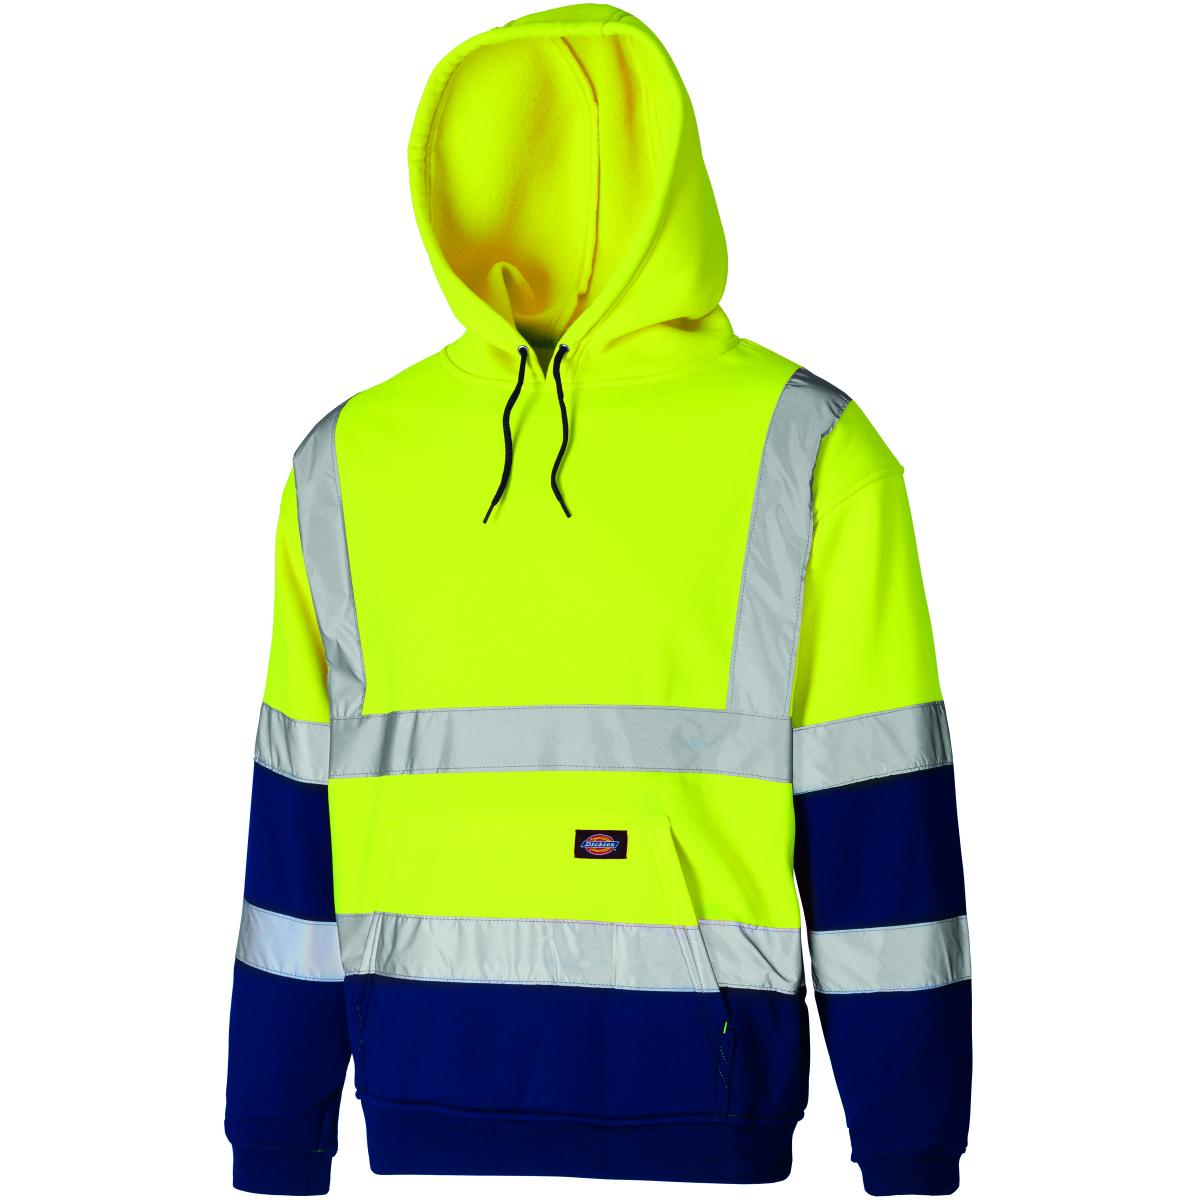 Hersteller: Dickies Herstellernummer: SA22095 Artikelbezeichnung: Hochsichtbares Zipper-Sweatshirt - EN ISO 20471:2013 Kl3 Farbe: Gelb/Marineblau